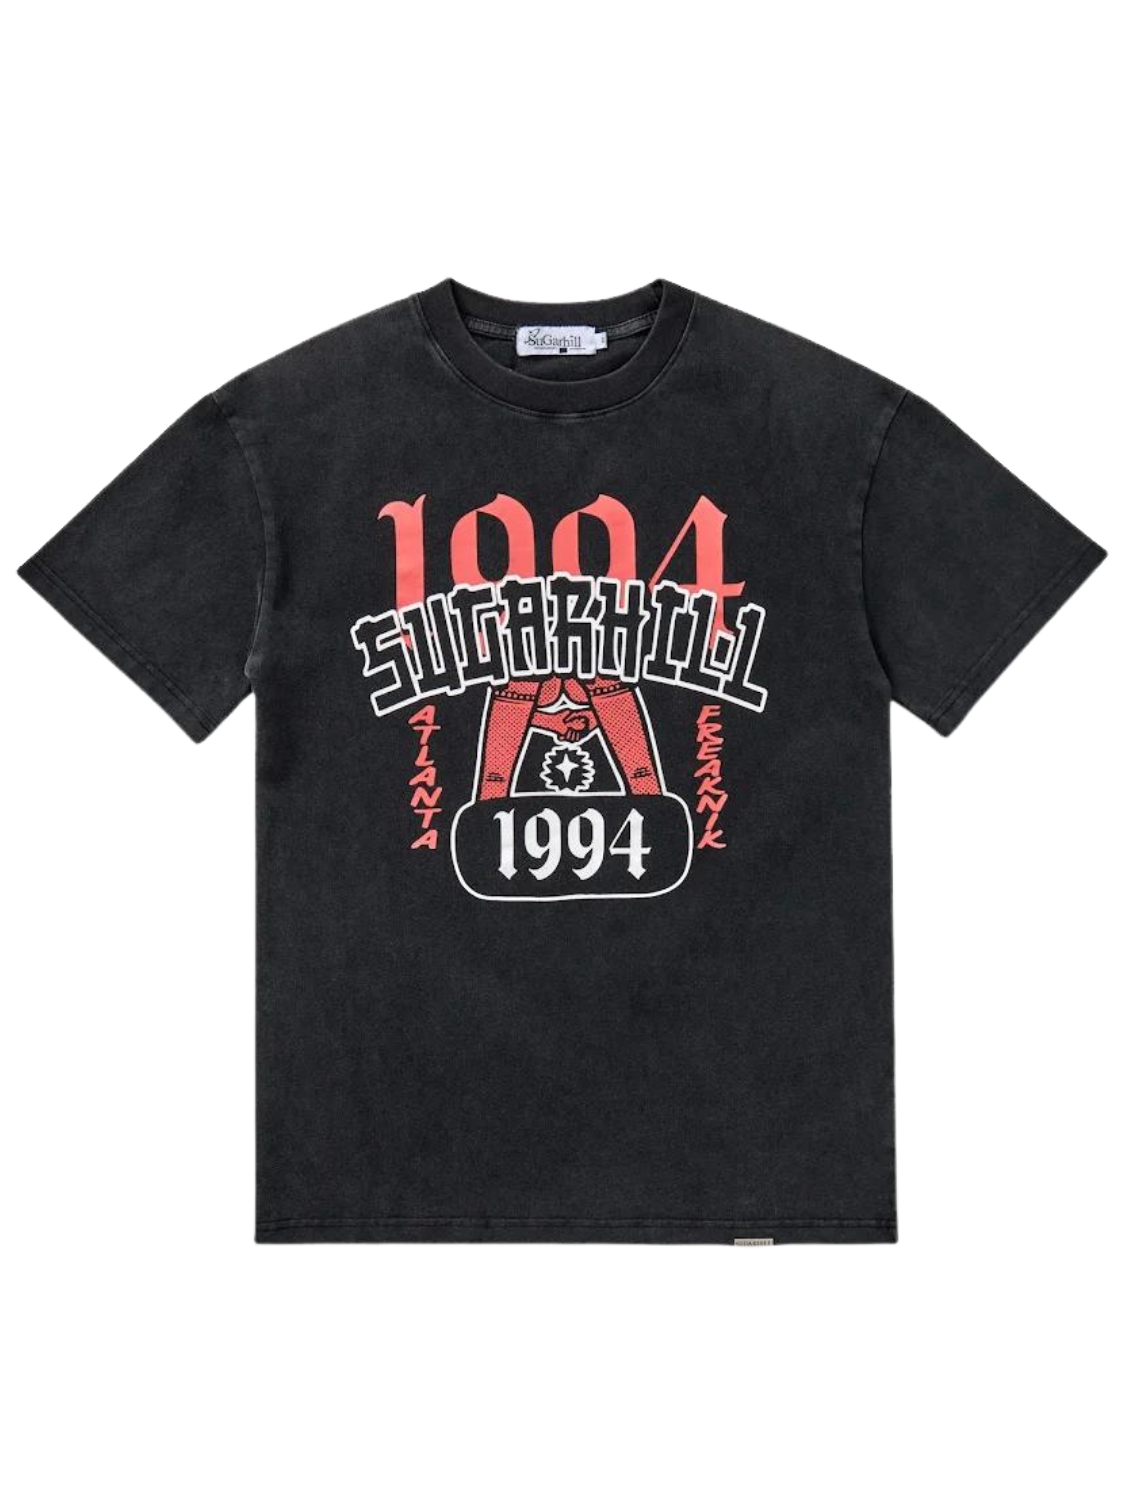 SugarHill' "1994" T-Shirt (Vintage Black)